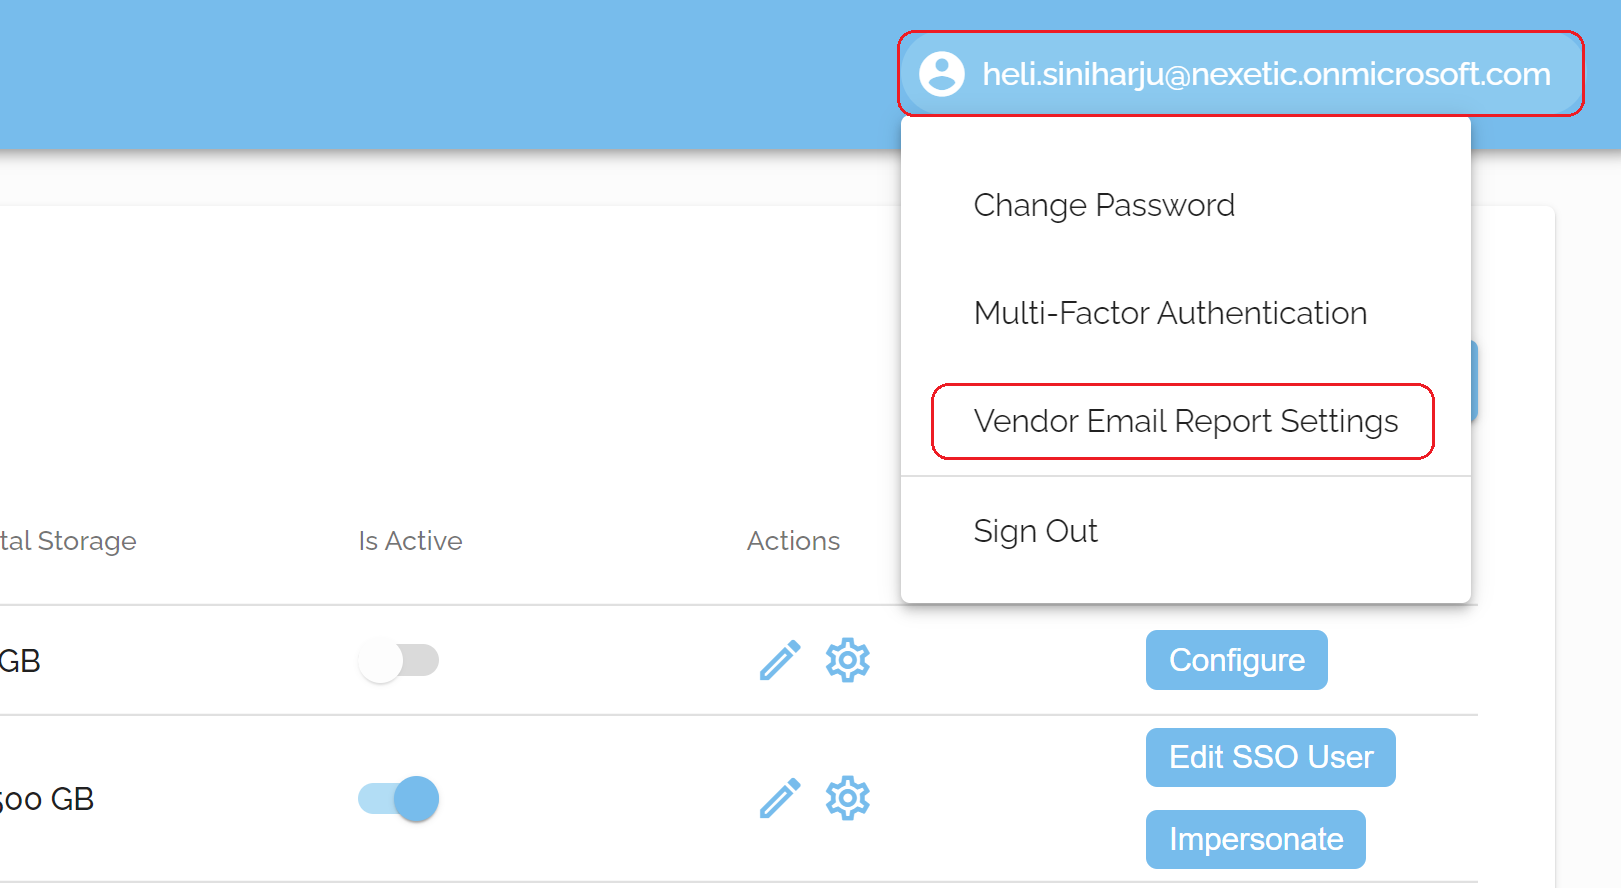 vendor-email-report-settings2.png